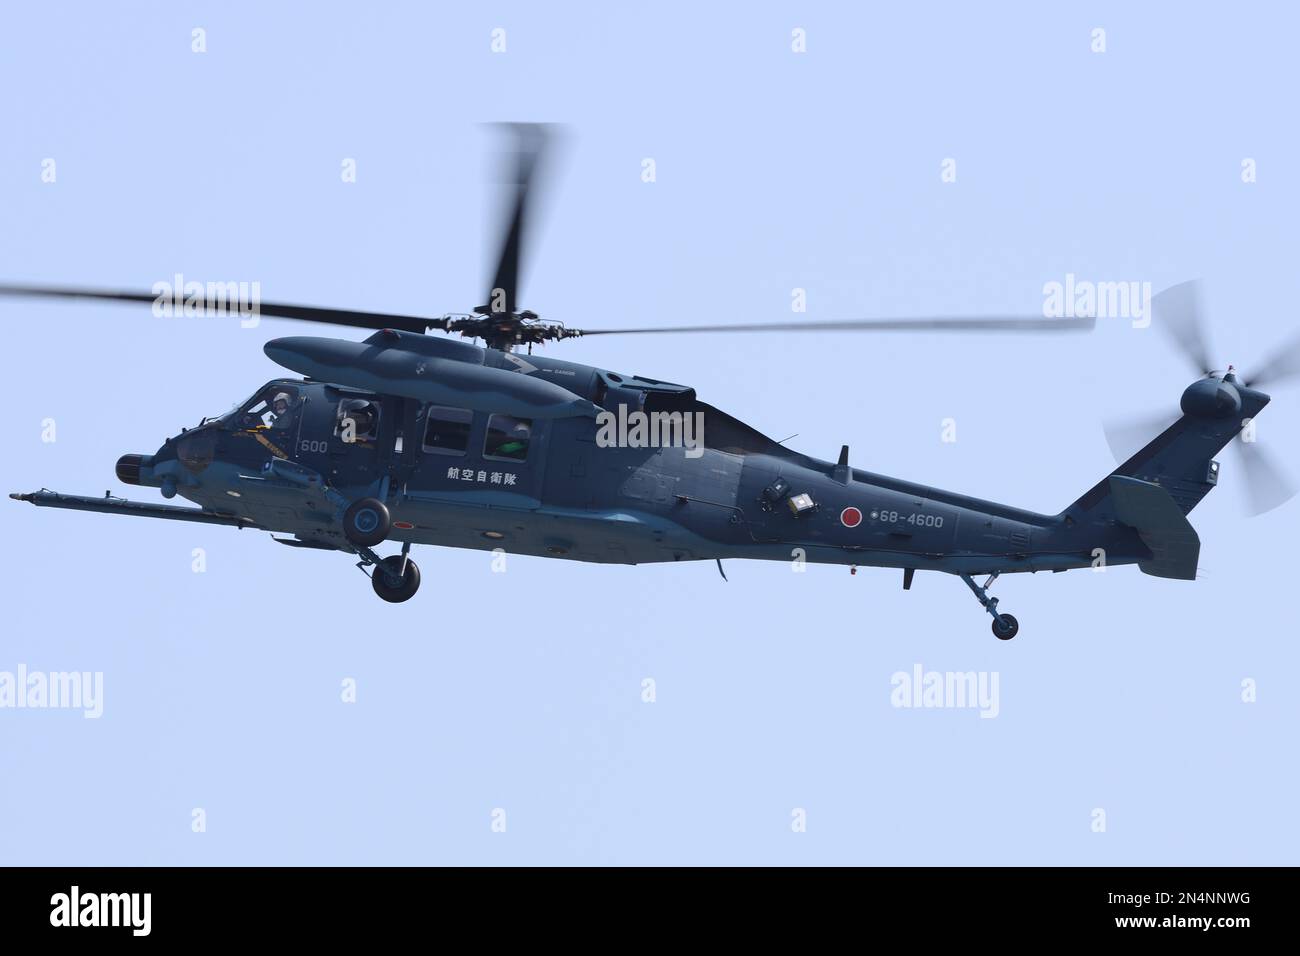 Préfecture d'Aichi, Japon - 08 mars 2016 : hélicoptère de recherche et de sauvetage Sikorsky UH-60J de la Force aérienne japonaise d'autodéfense. Banque D'Images